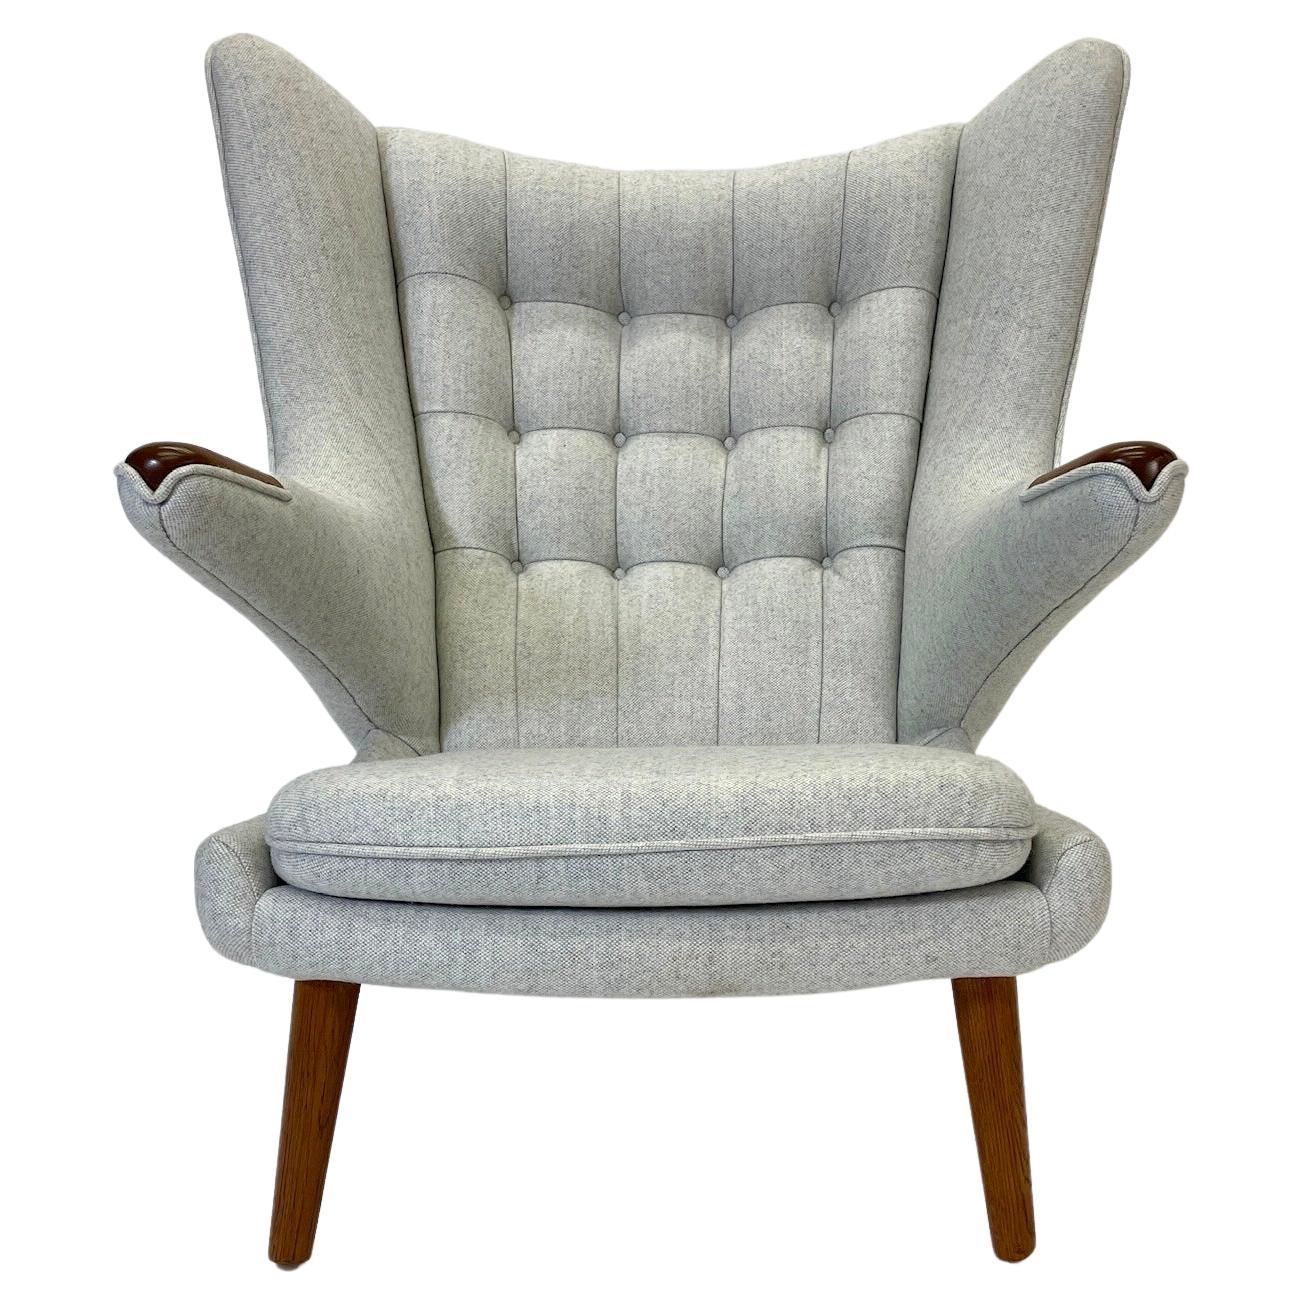 La chaise Papa Ours  est une pièce absolument étonnante.  AP-29. Une chaise vraiment emblématique, nouvellement tapissée dans la plus belle laine grise de Maharam. La chaise est dotée de magnifiques pieds en chêne et de pattes en teck.

Bien